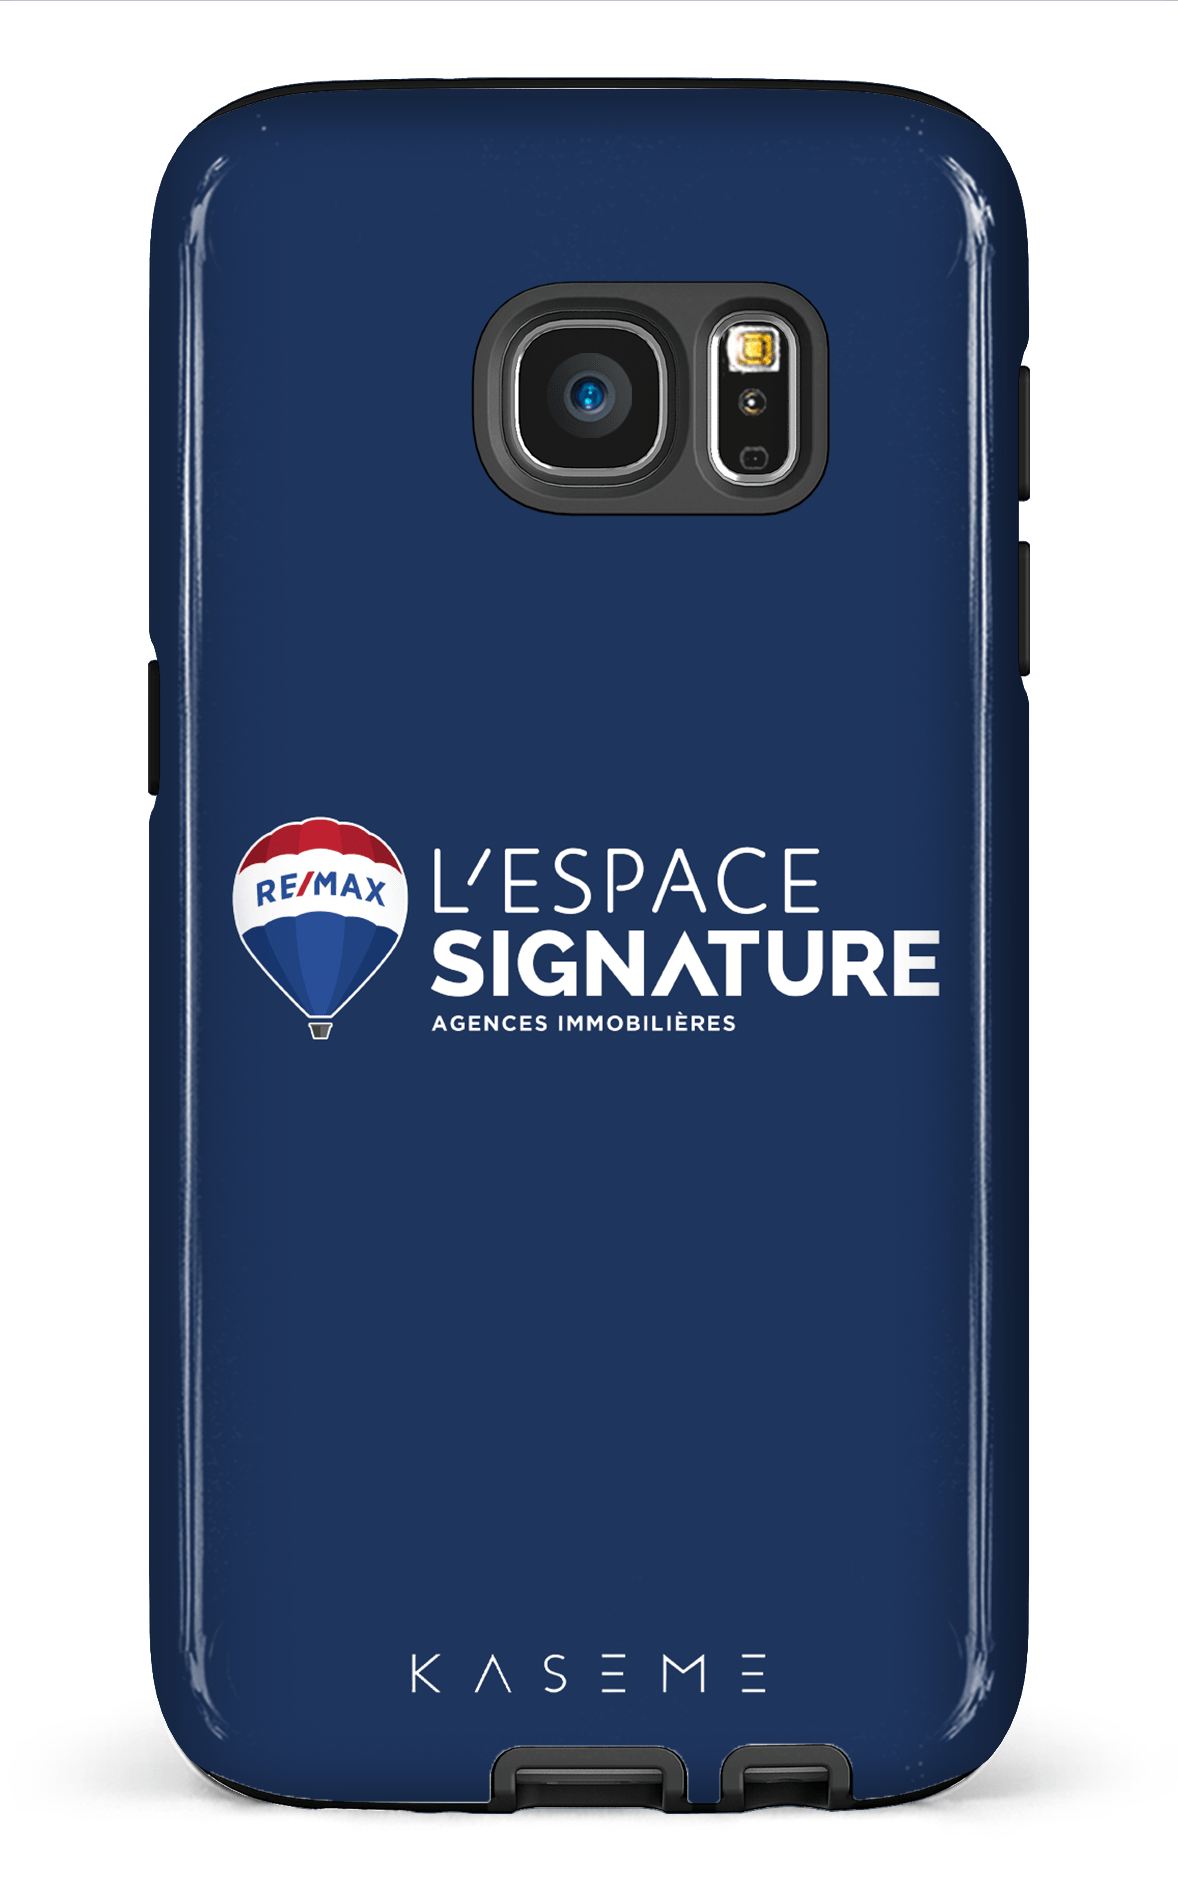 Remax Signature L'espace Bleu - Galaxy S7